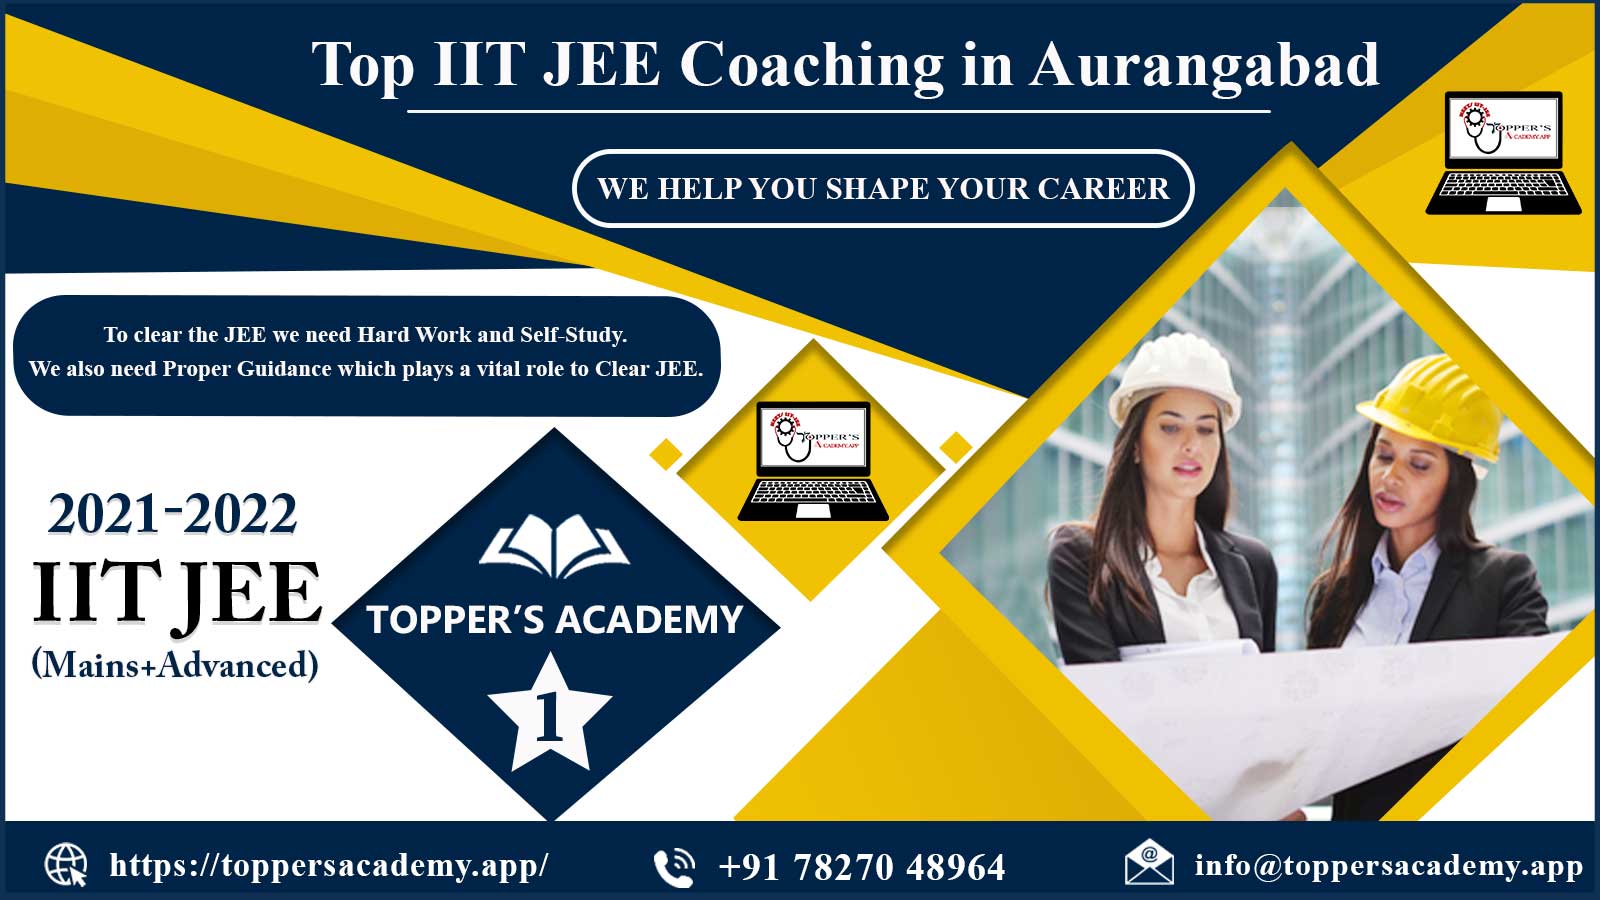 Toppers Academy IIT JEE Coaching in Aurangabad